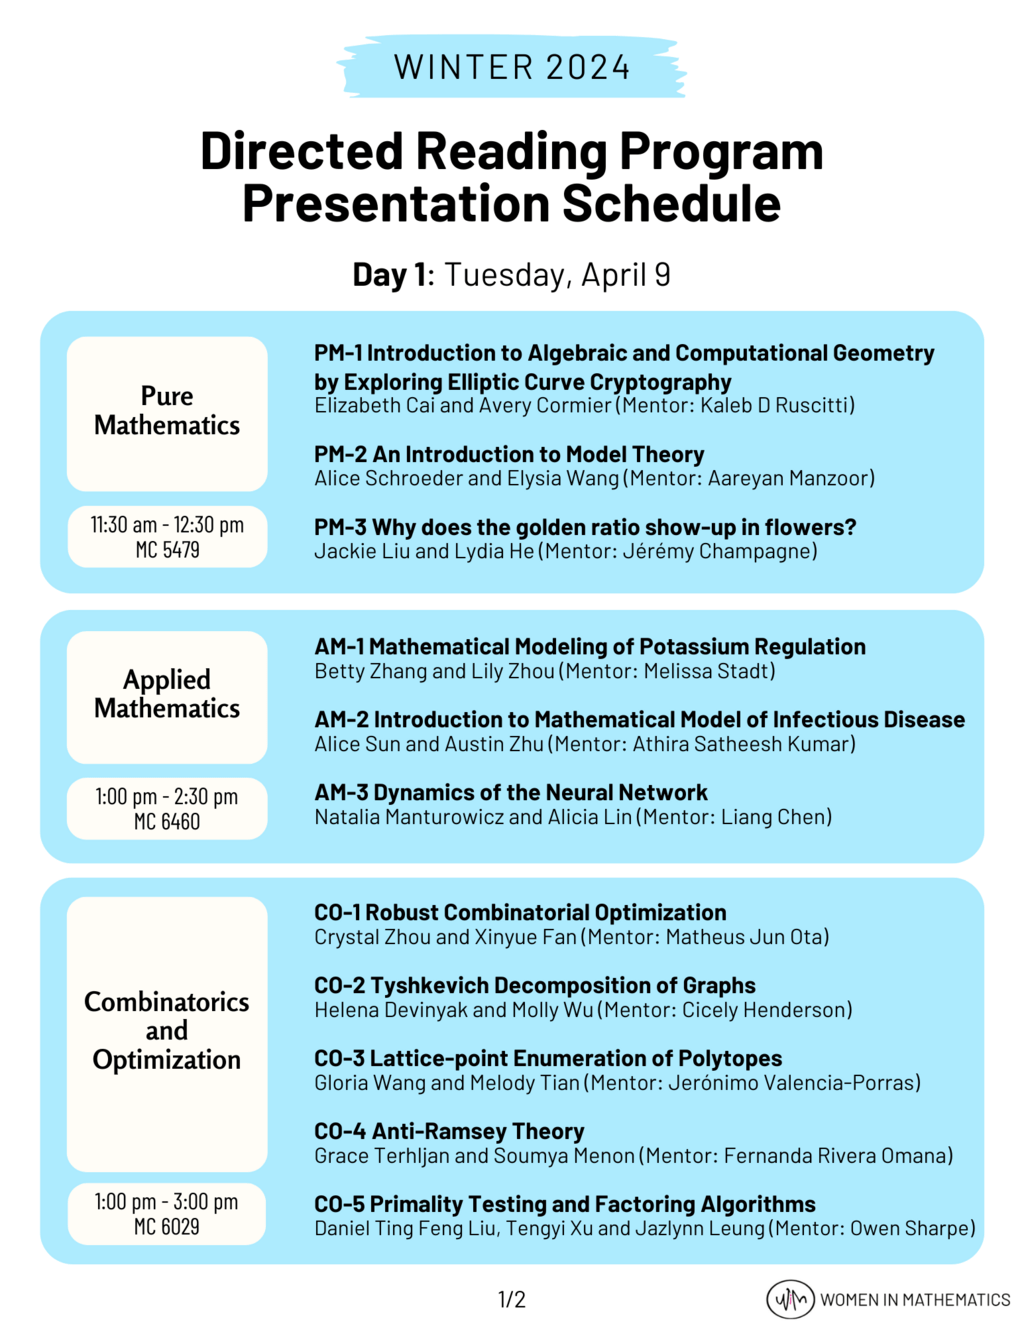 Winter 2024 DRP Presentation Schedule 1/2